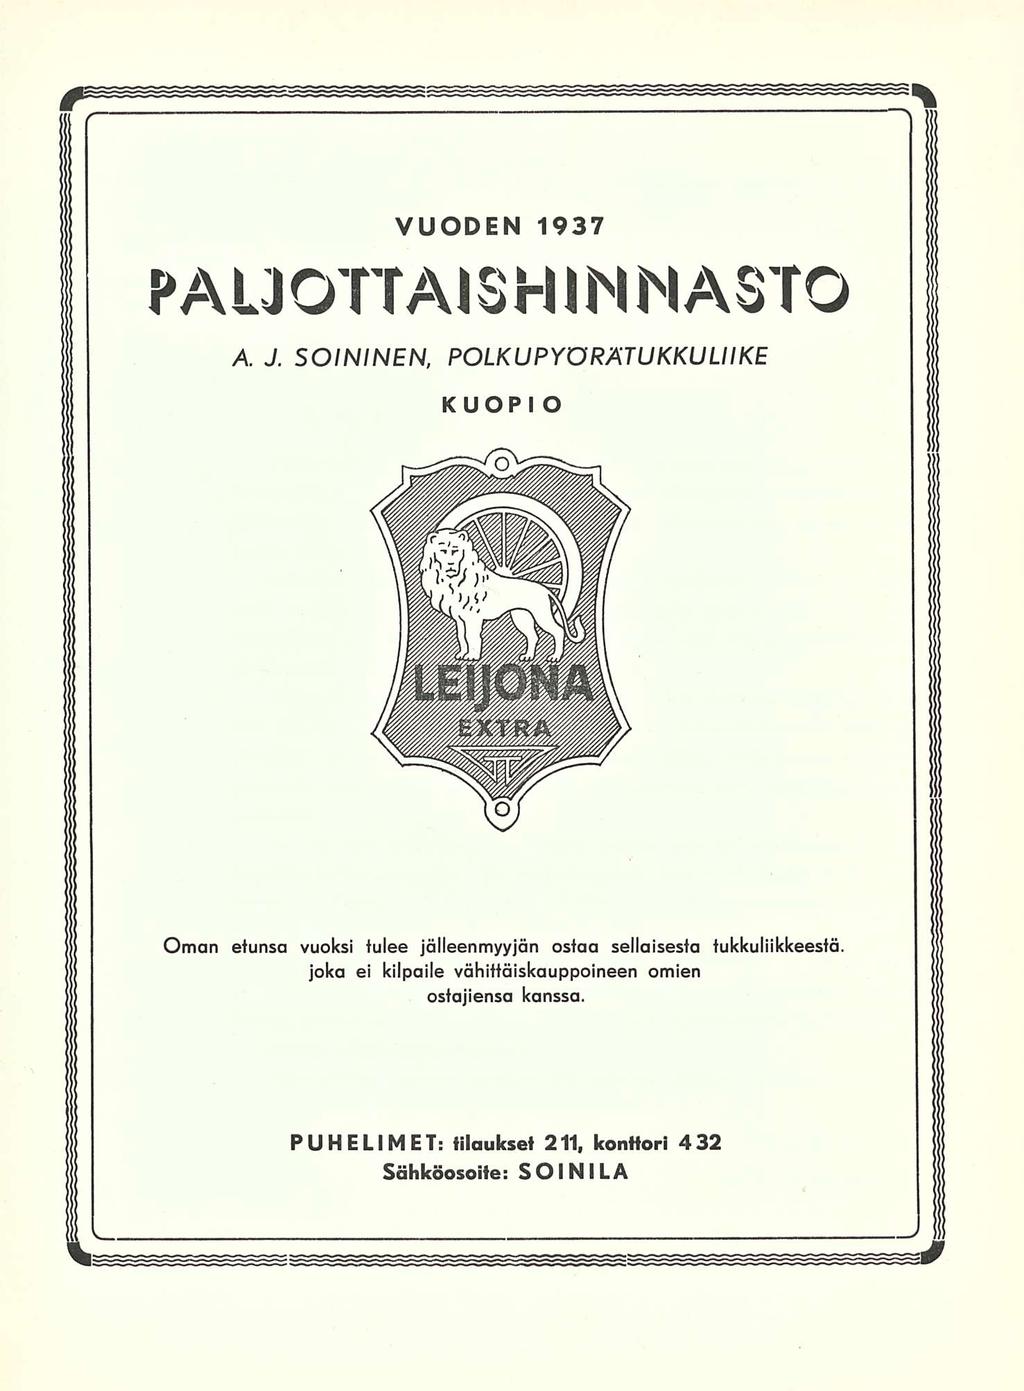 VUODEN 1937 PAUOTTAISHINNASTO A.J.SOININEN.